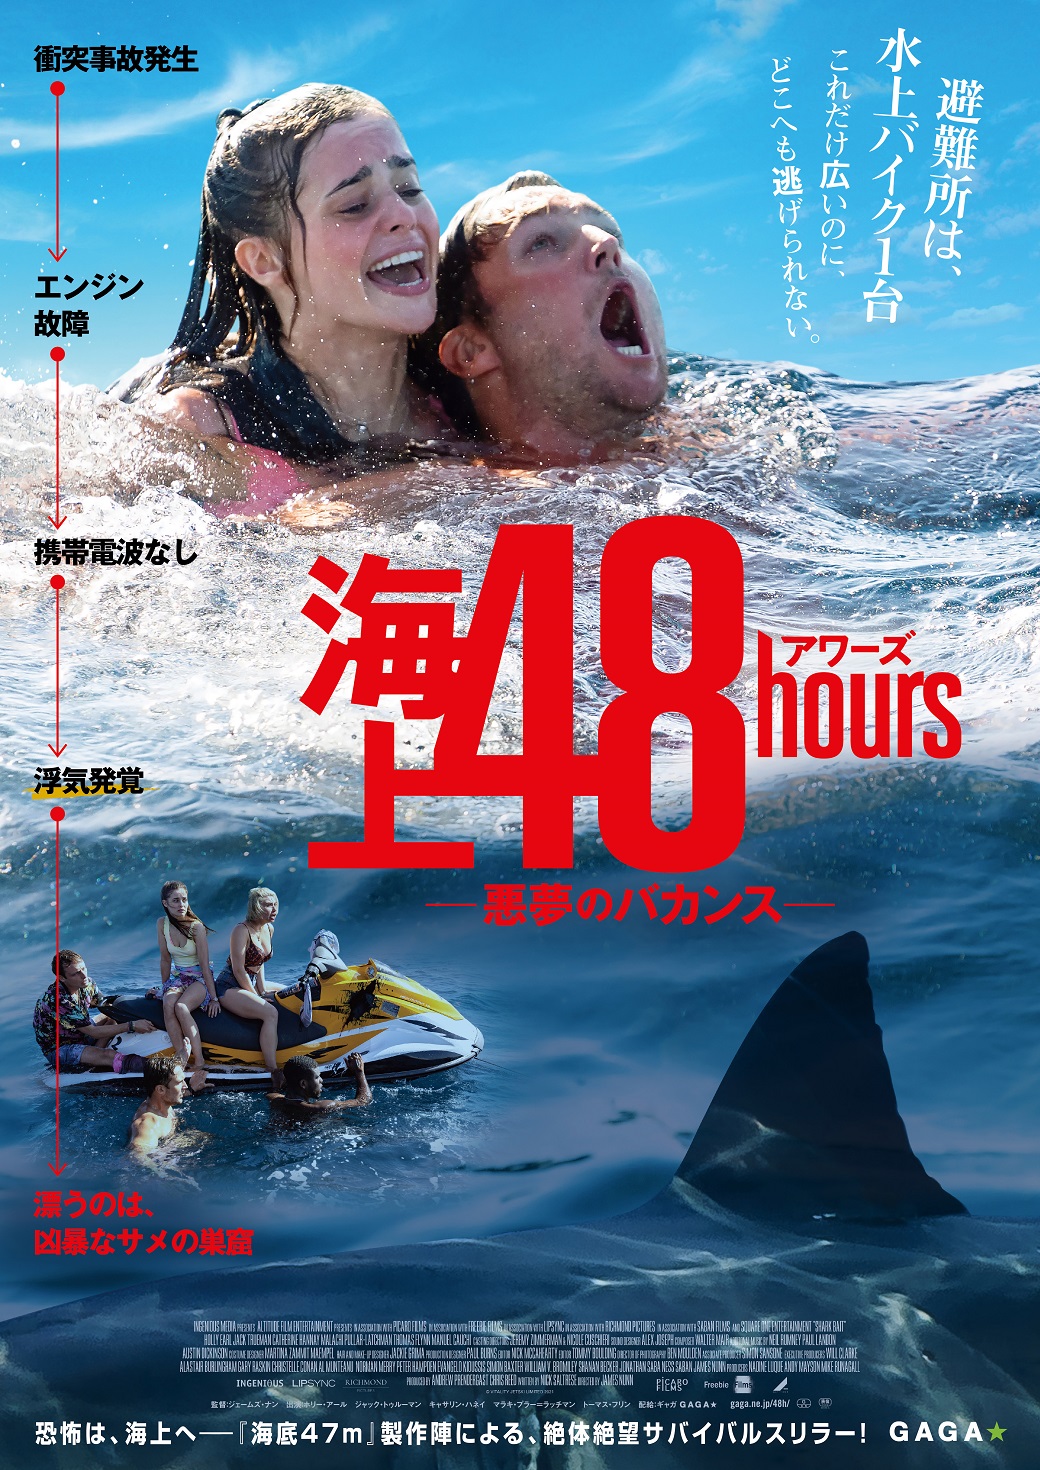 パリピ大学生 サメ地獄へ直行 海上48hours 悪夢のバカンス は精神をすり減らされるスリラー 映画 Banger